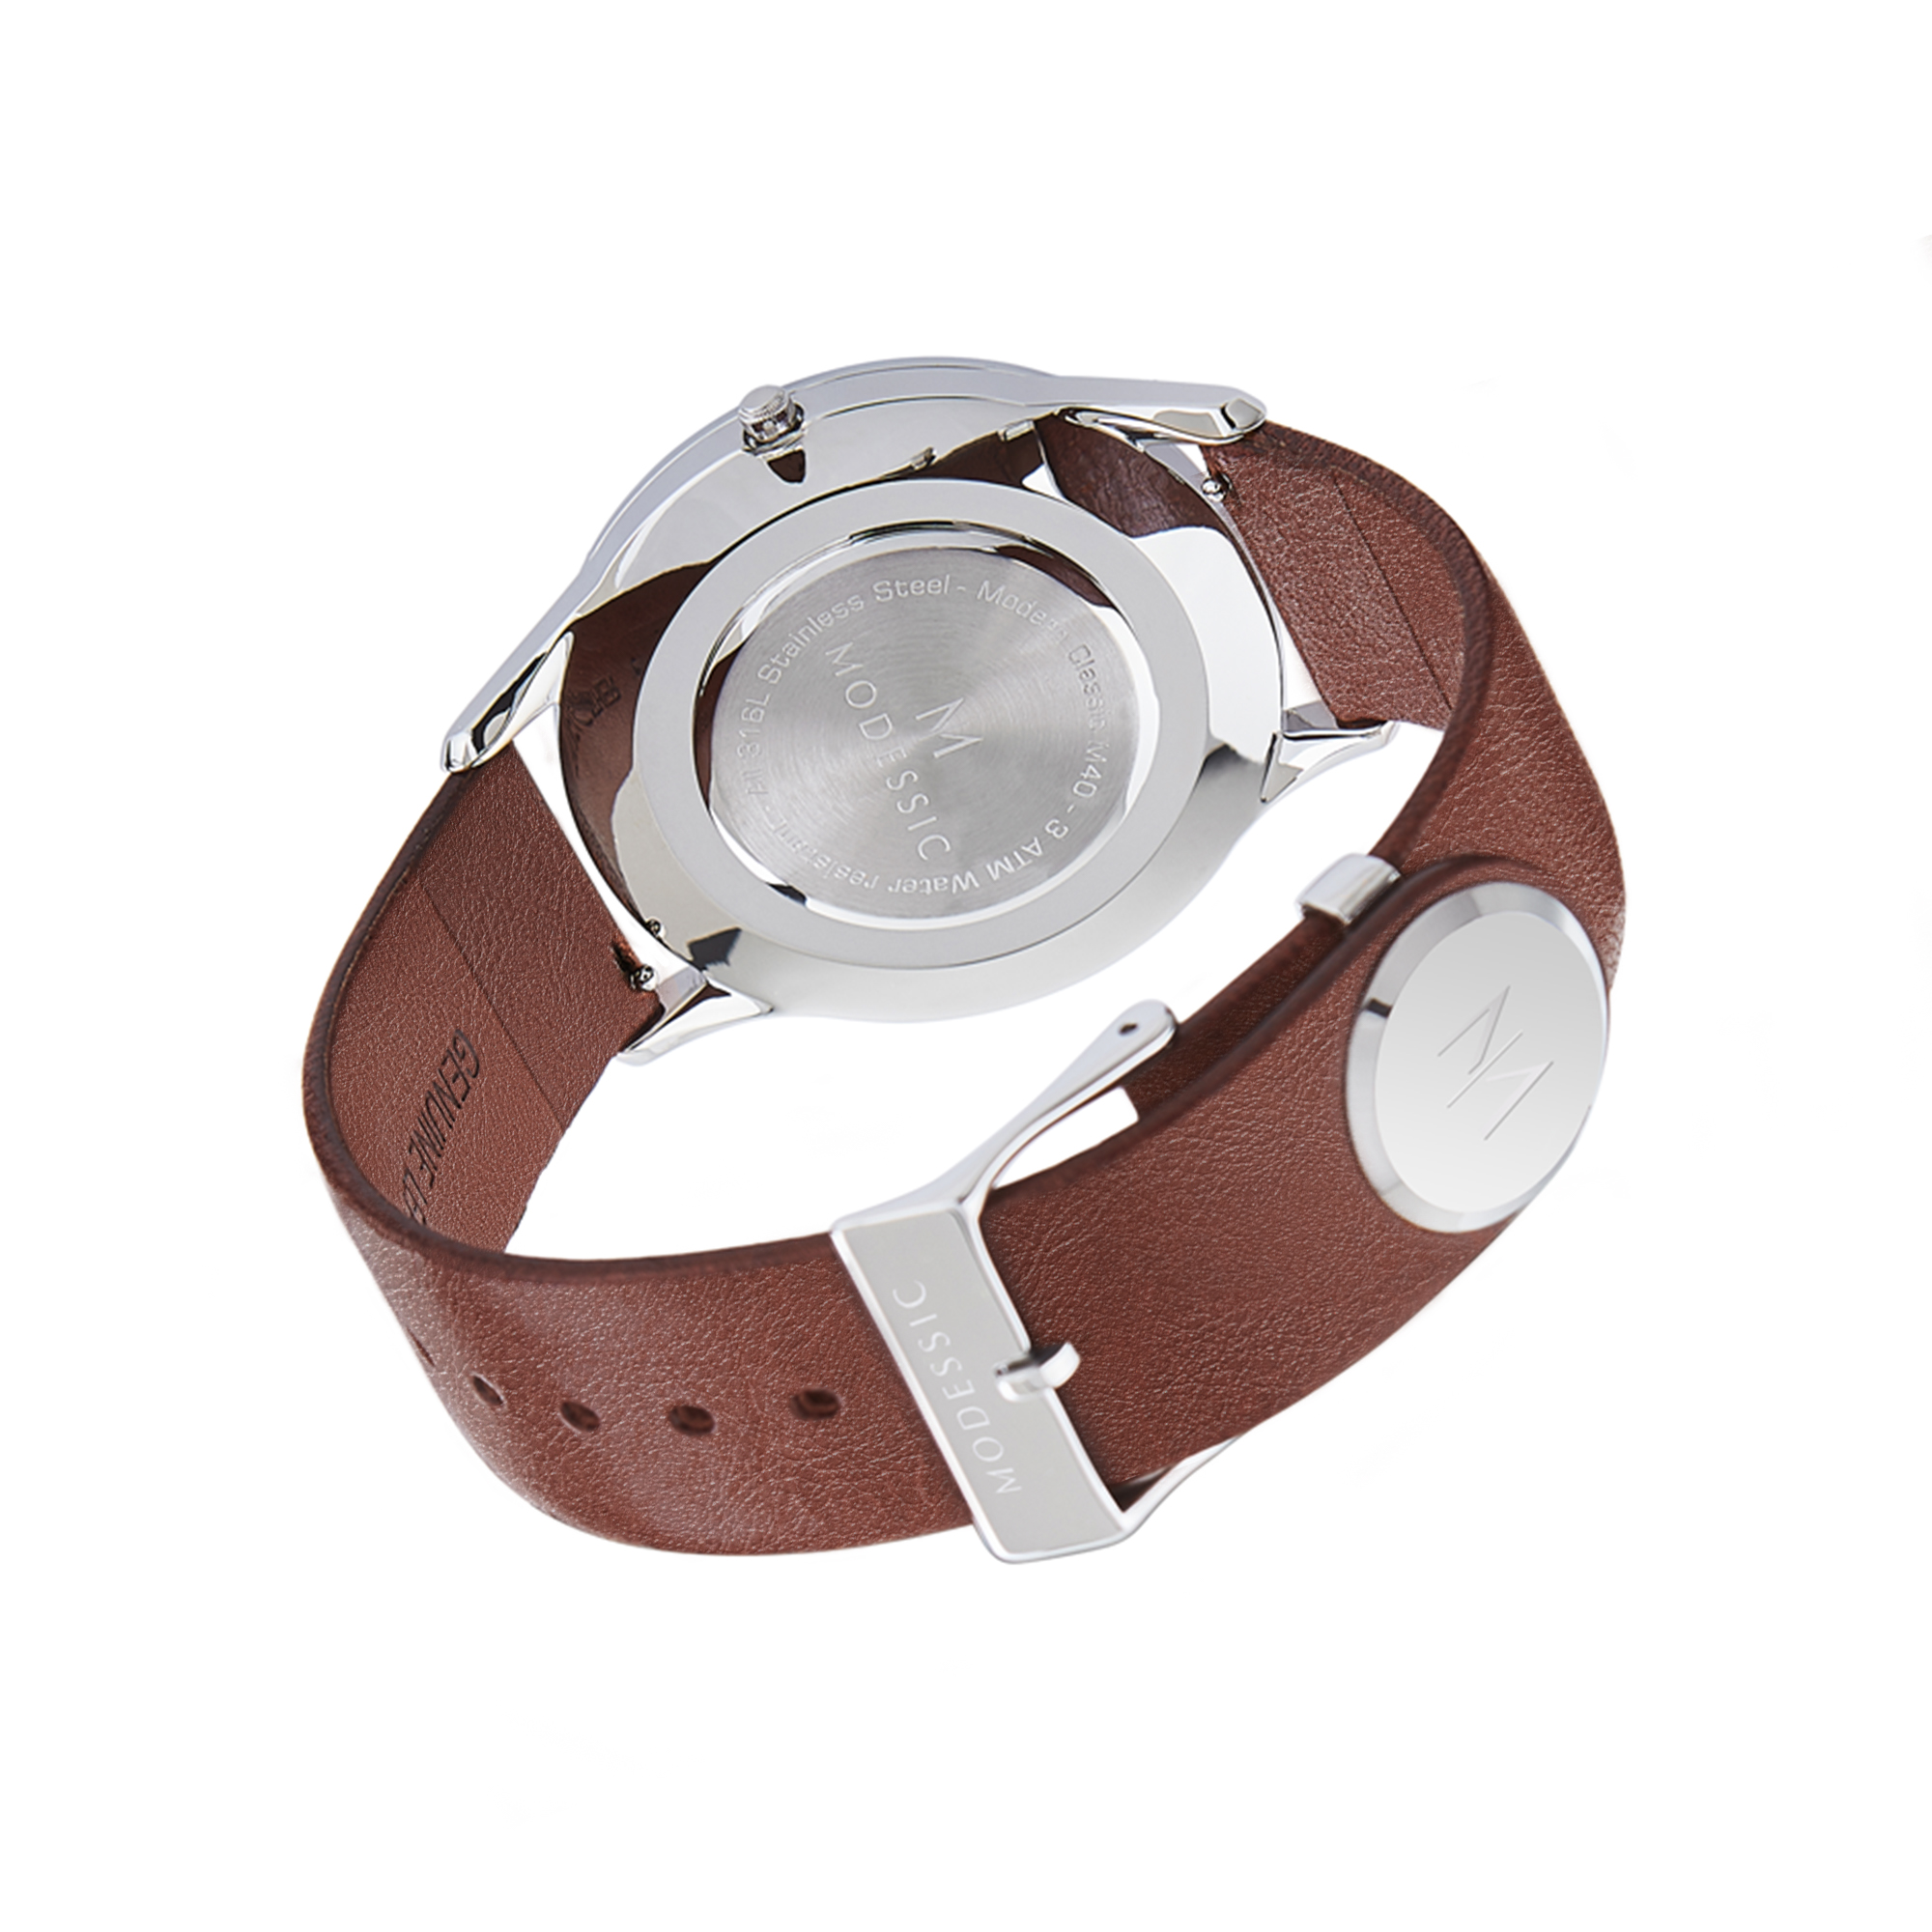 Vit silver brun klassisk herrklocka - Snygg klassisk herrklocka - Klassiska armbandsklockor för herr - Visionary Heritage - 4